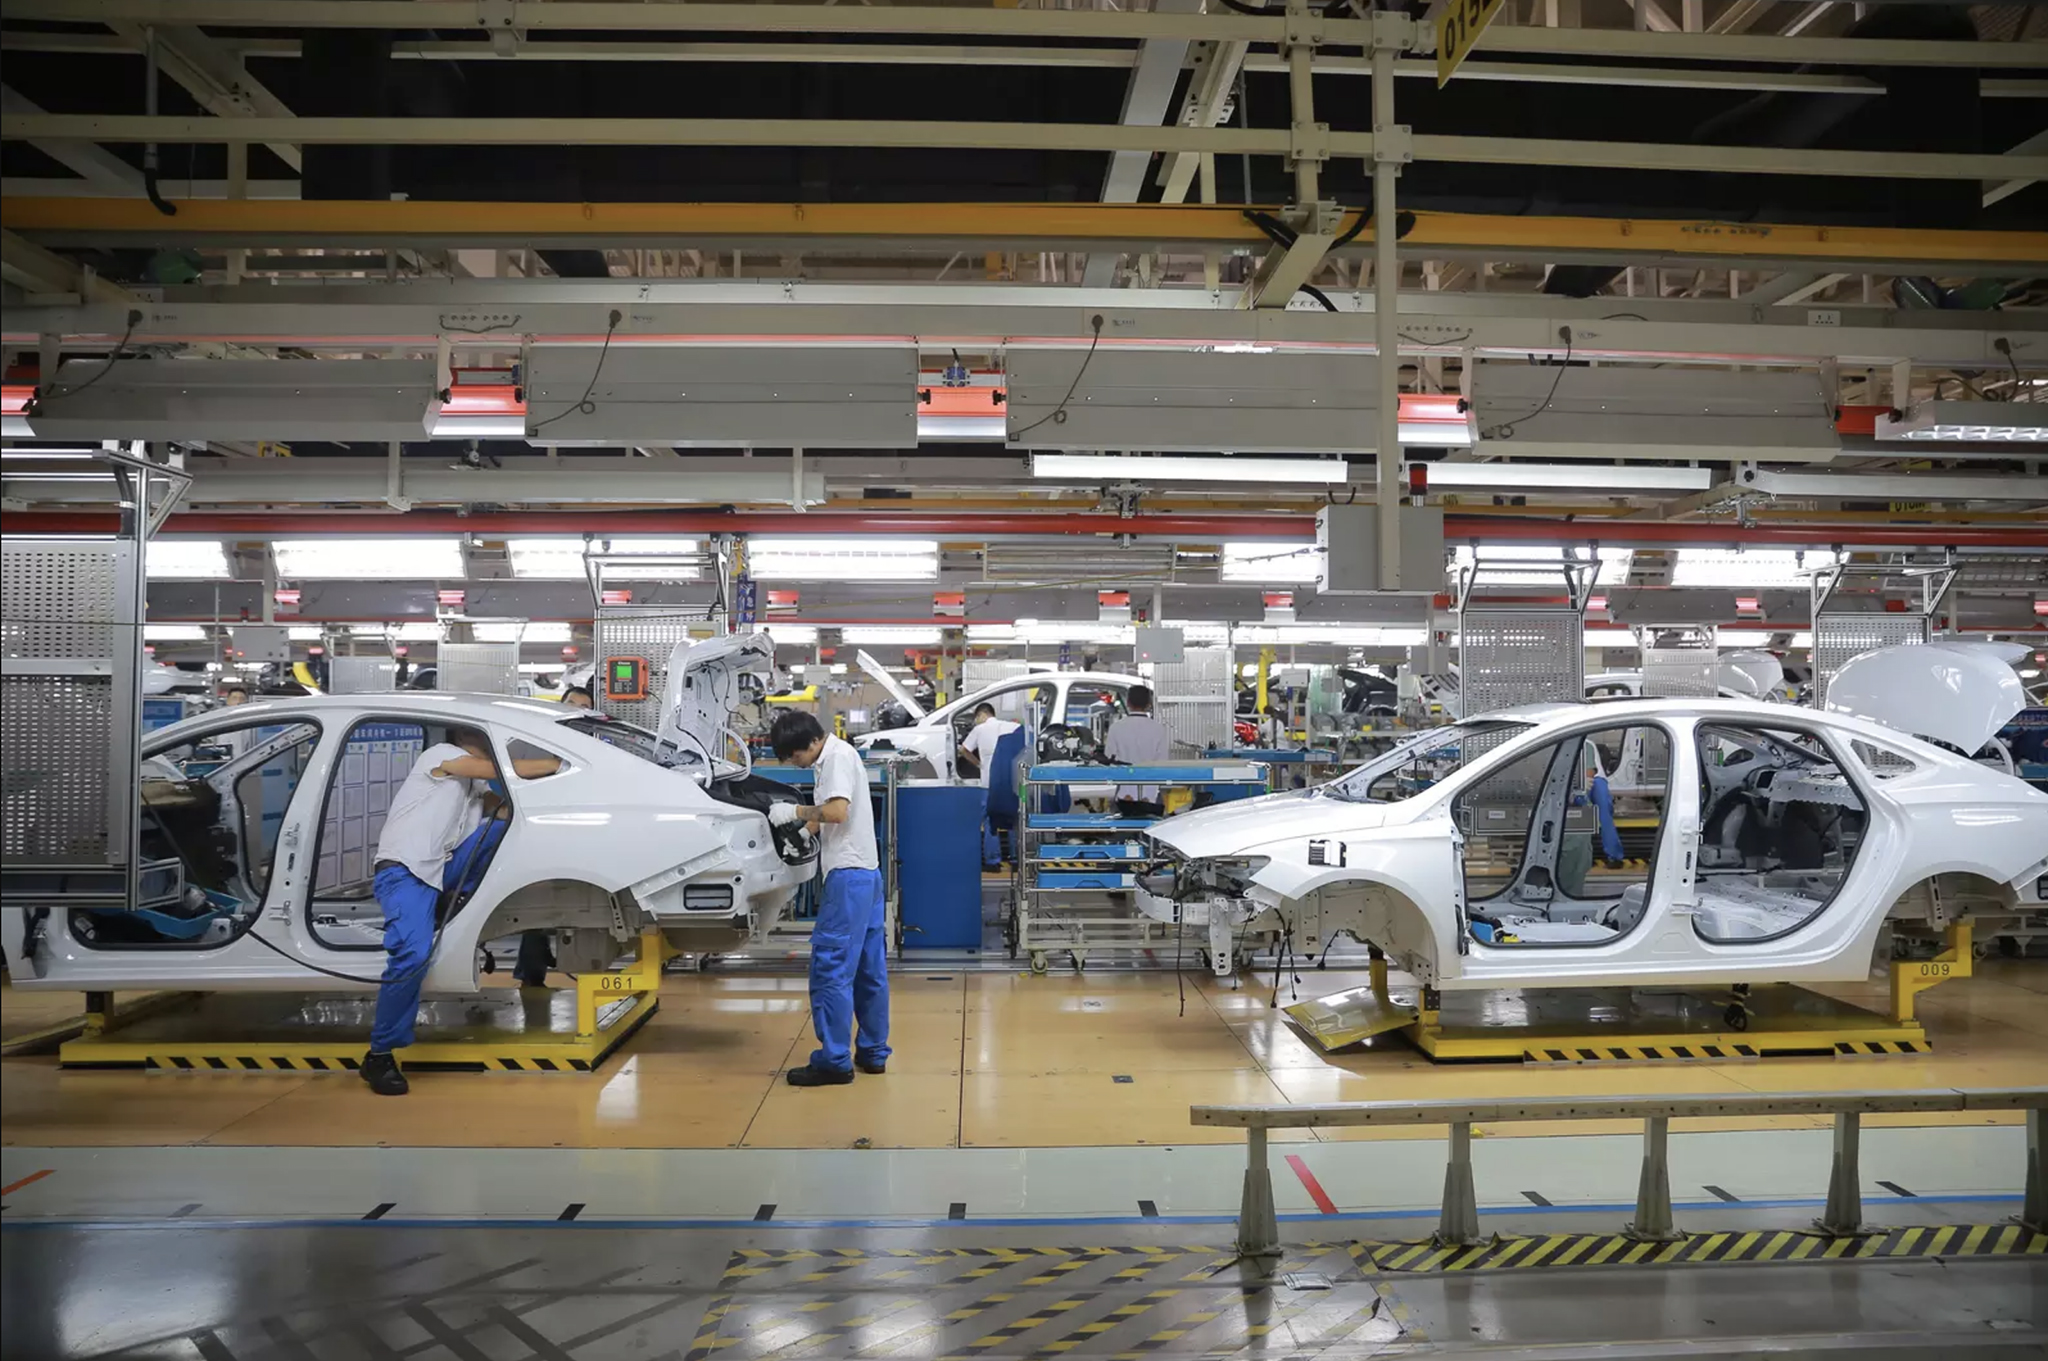 Fabricantes de carros eléctricos enviam localização de viaturas para Governo chinês